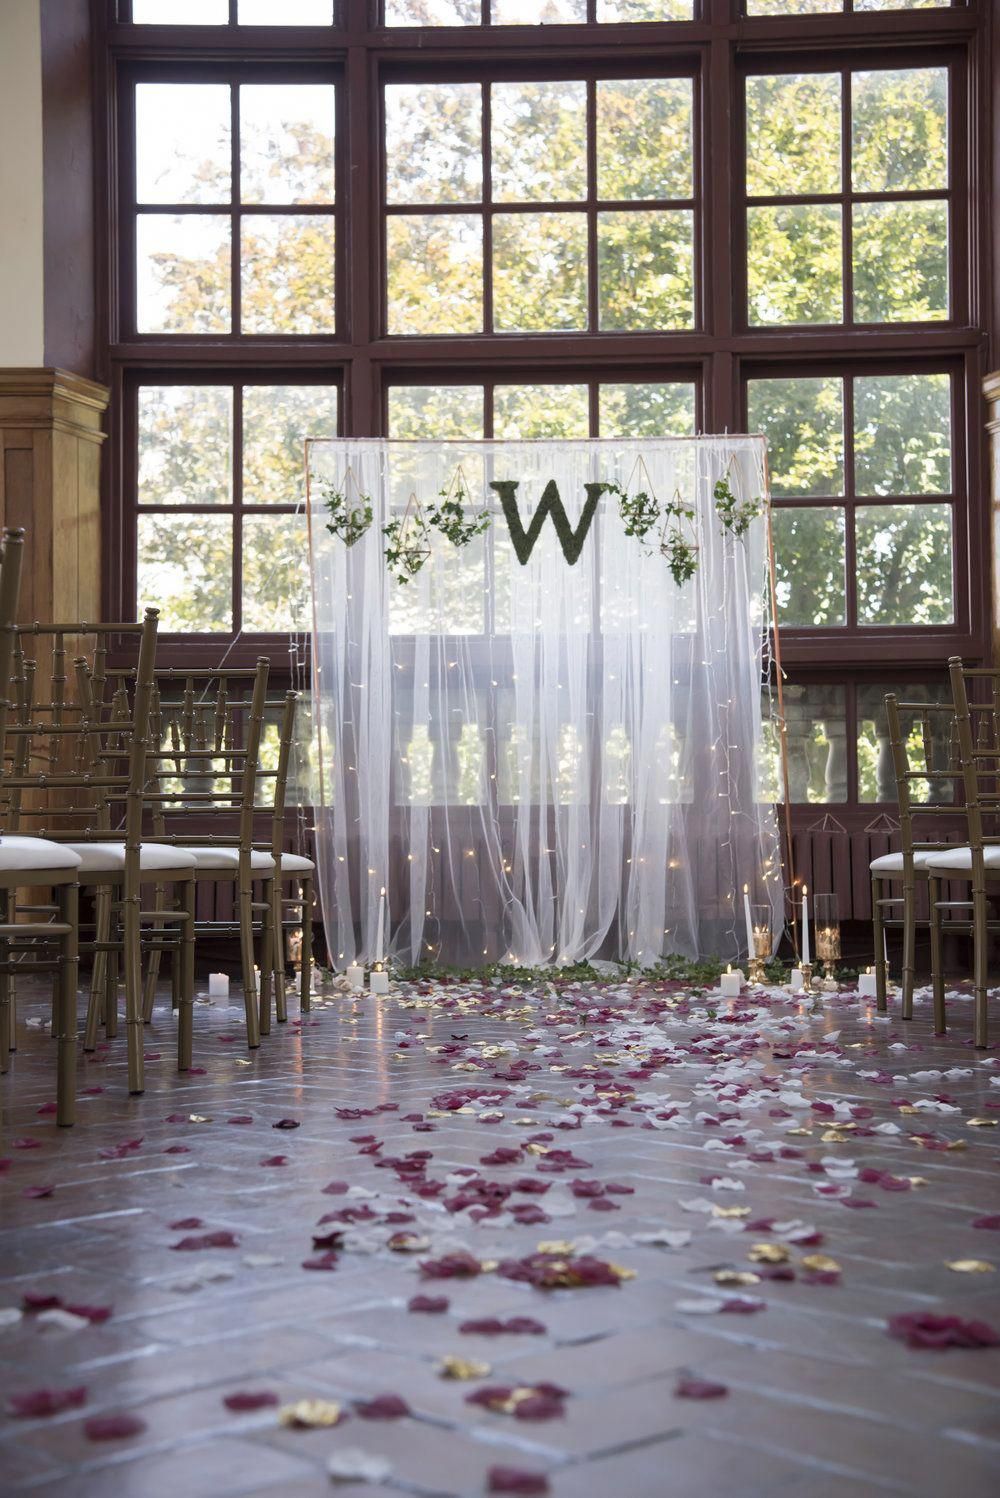 DIY Wedding Ceremony Backdrop (No Tools Required!) — Simply Handmade Studios - DIY Wedding Ceremony Backdrop (No Tools Required!) — Simply Handmade Studios -   18 diy Wedding alter ideas